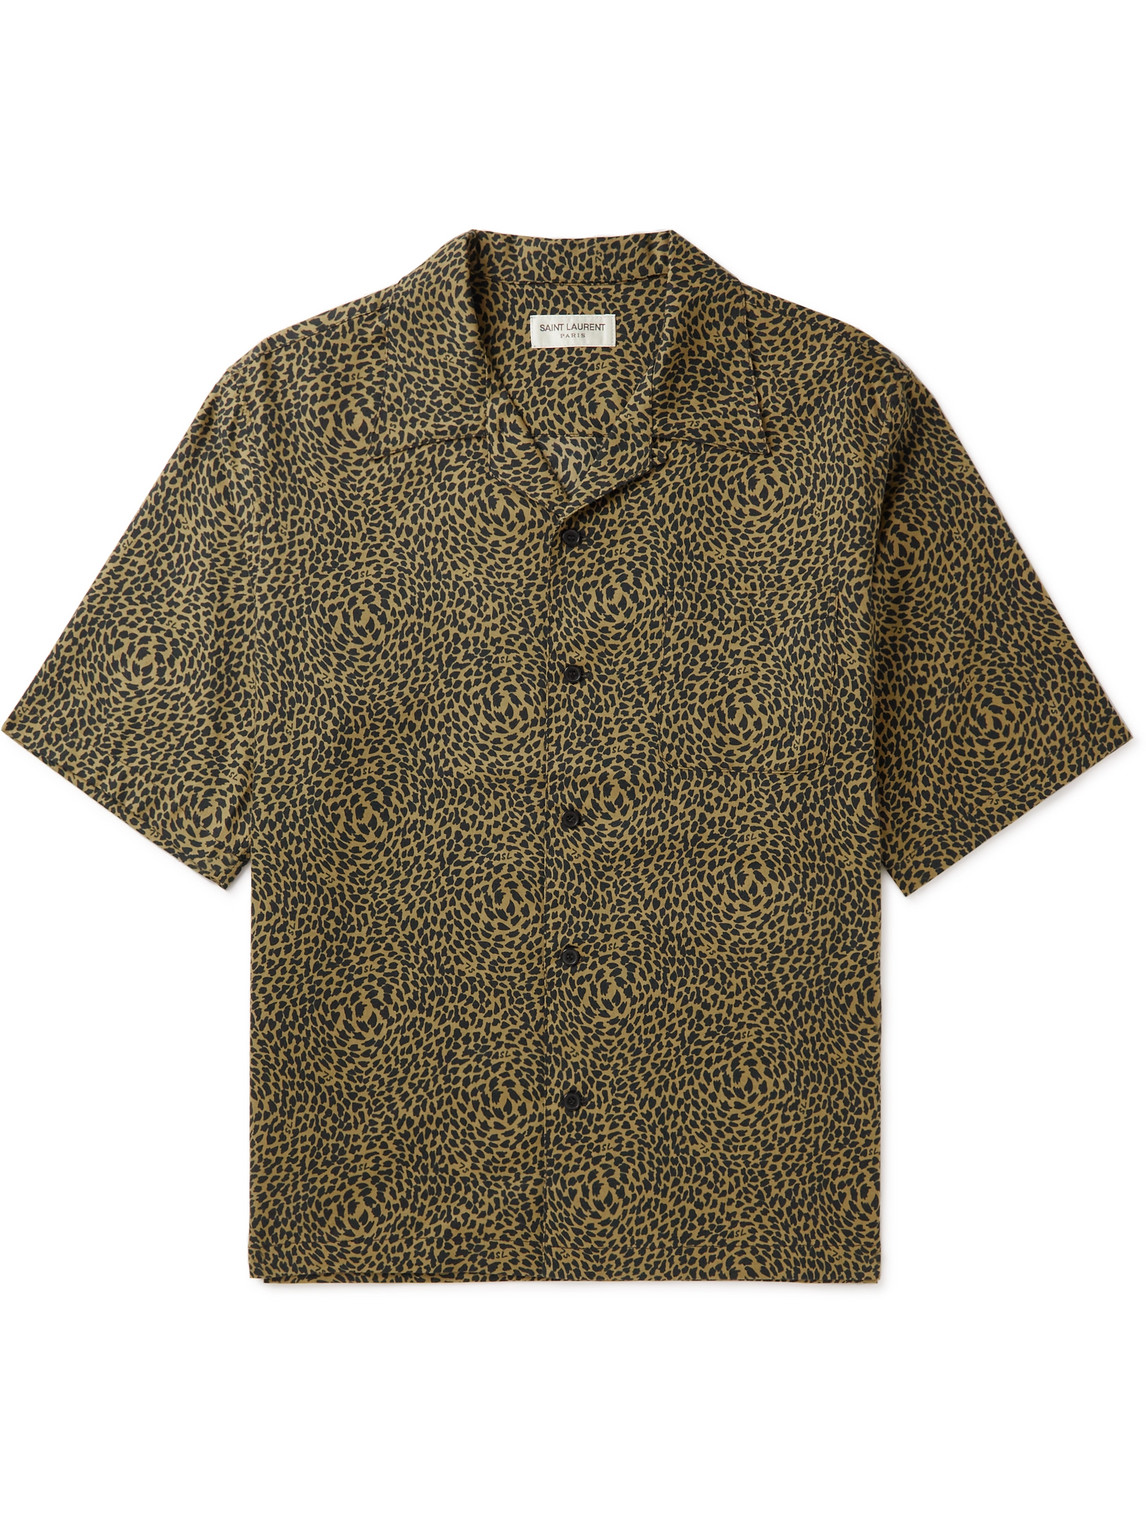 SAINT LAURENT - Camp-Collar Leopard-Print Lyocell and Cotton-Blend Shirt - Men - Brown - L von SAINT LAURENT